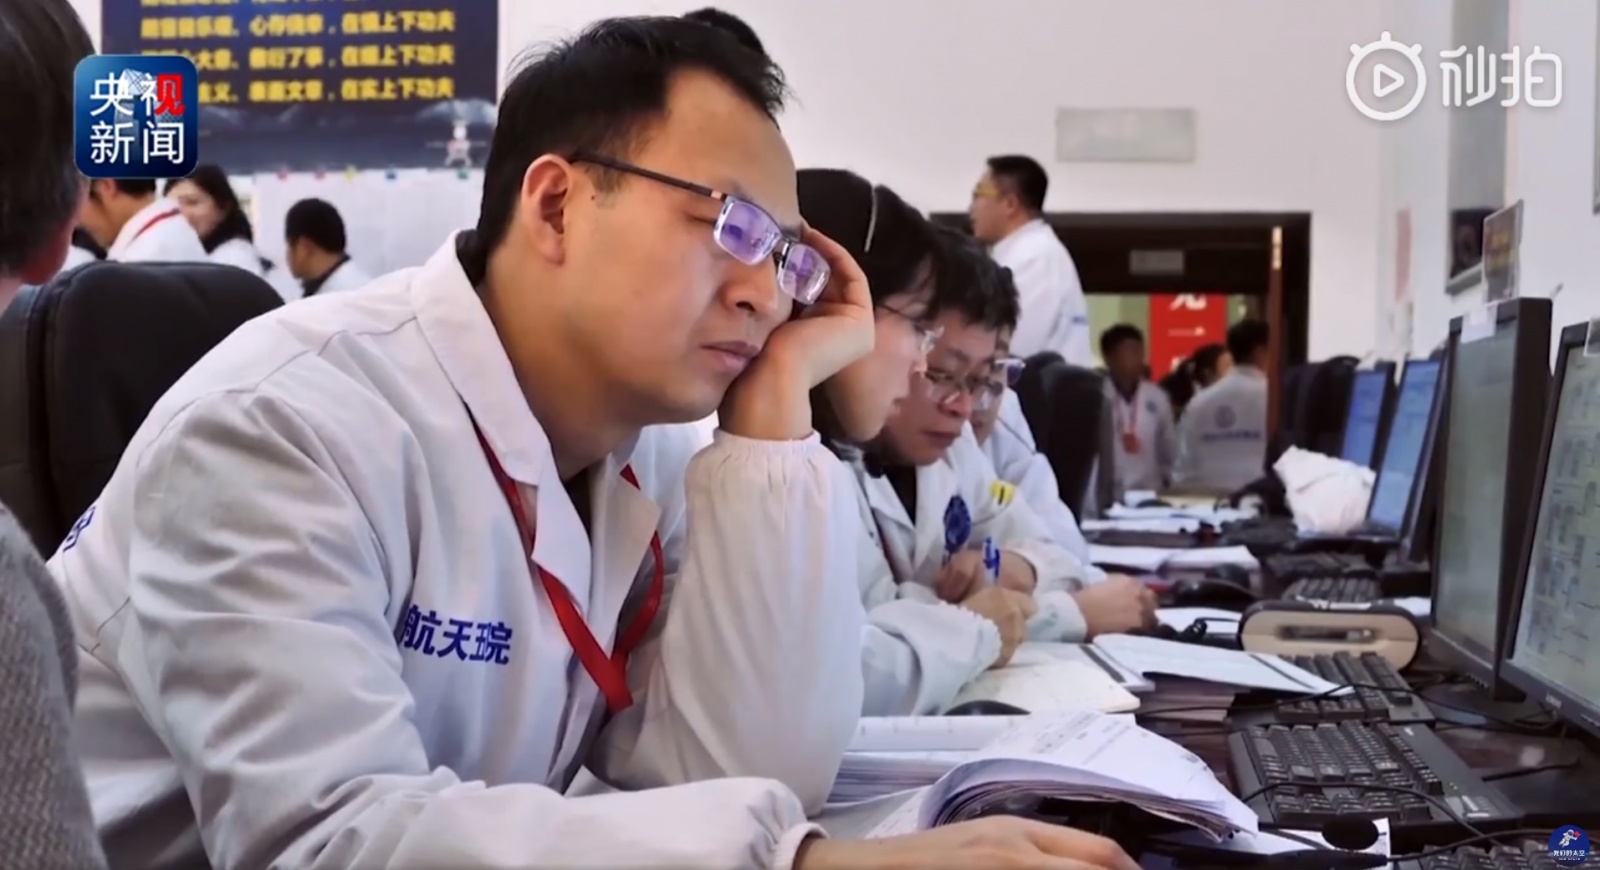 Суровая рабочая реальность — Китайский космодром Сичан (Xichang Satellite Launch Center — XSLC) - 118